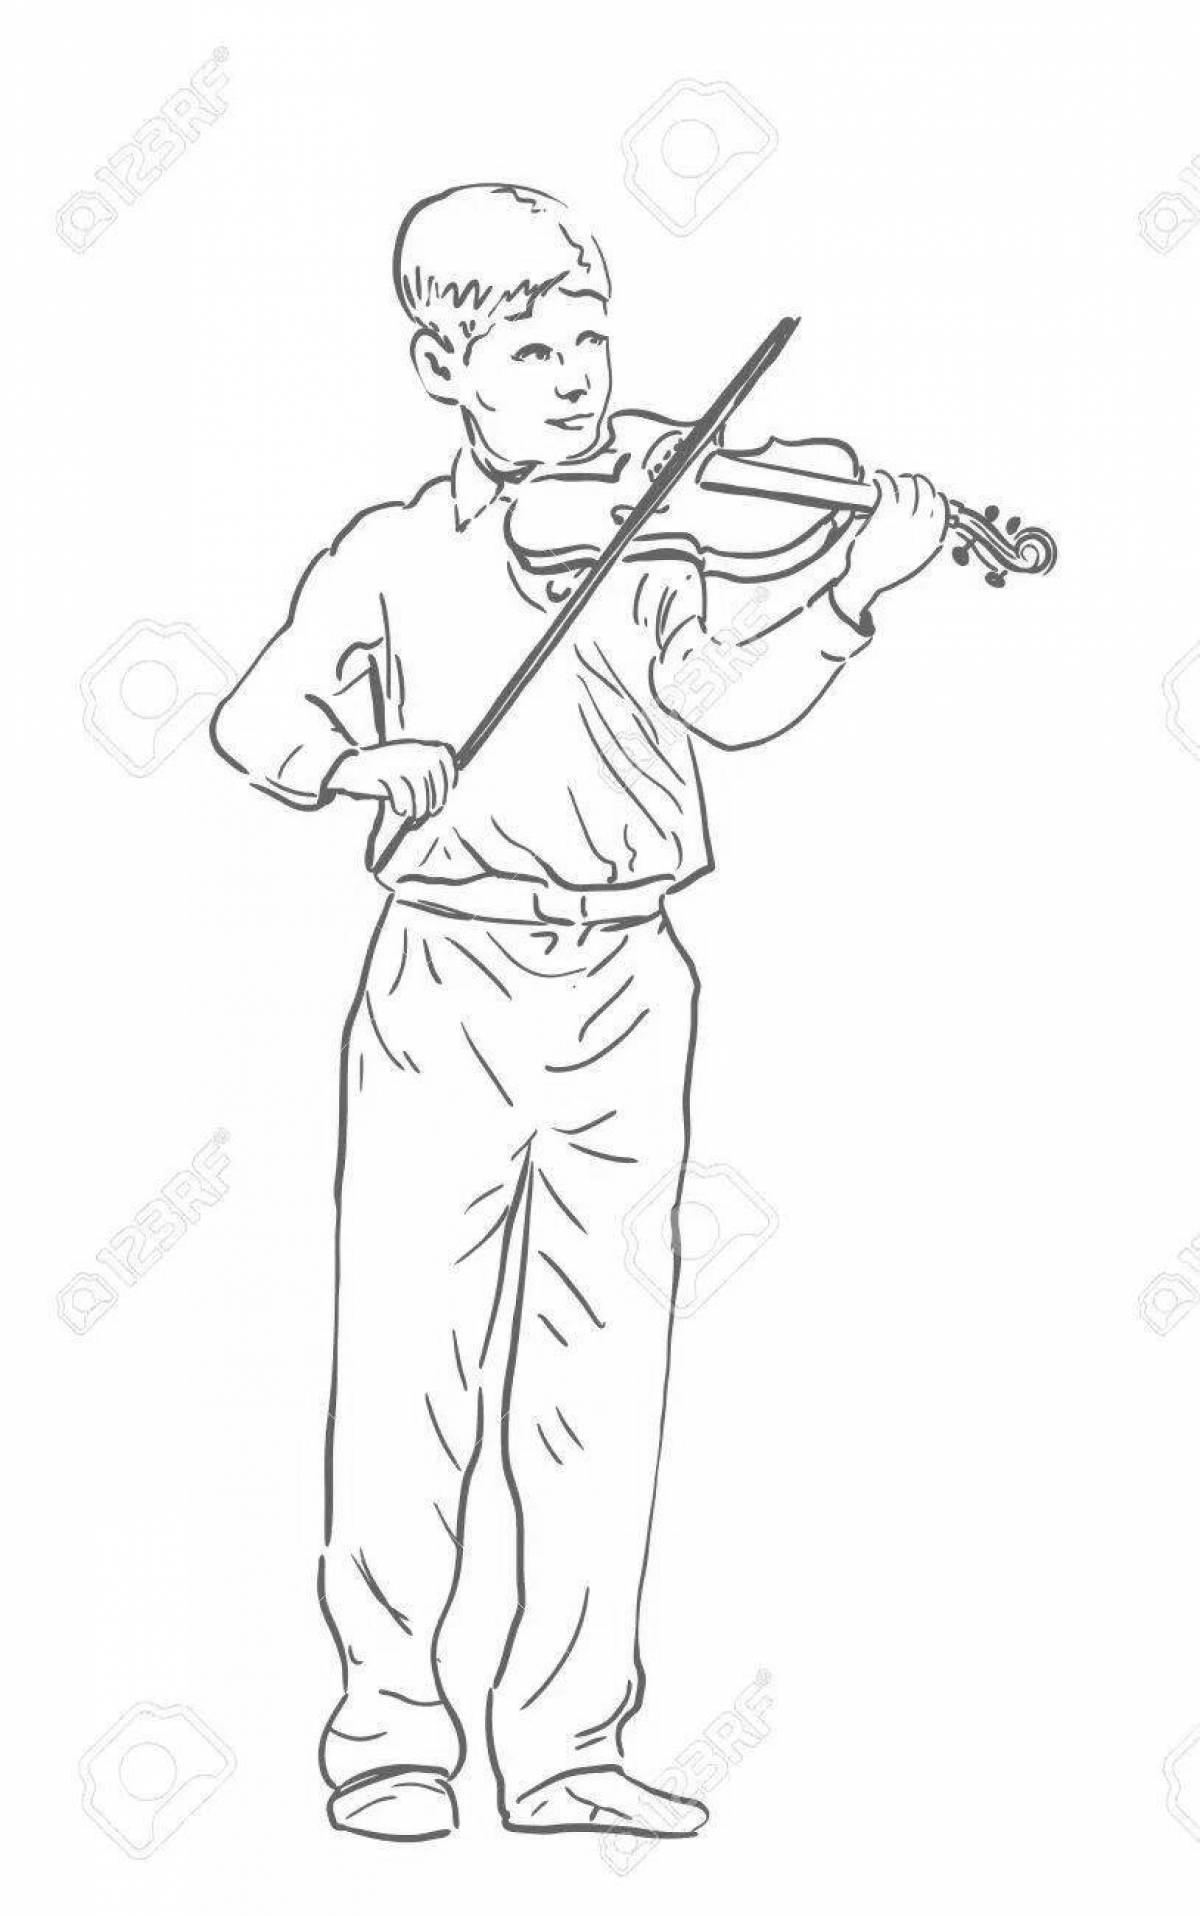 Fun coloring boy with violin